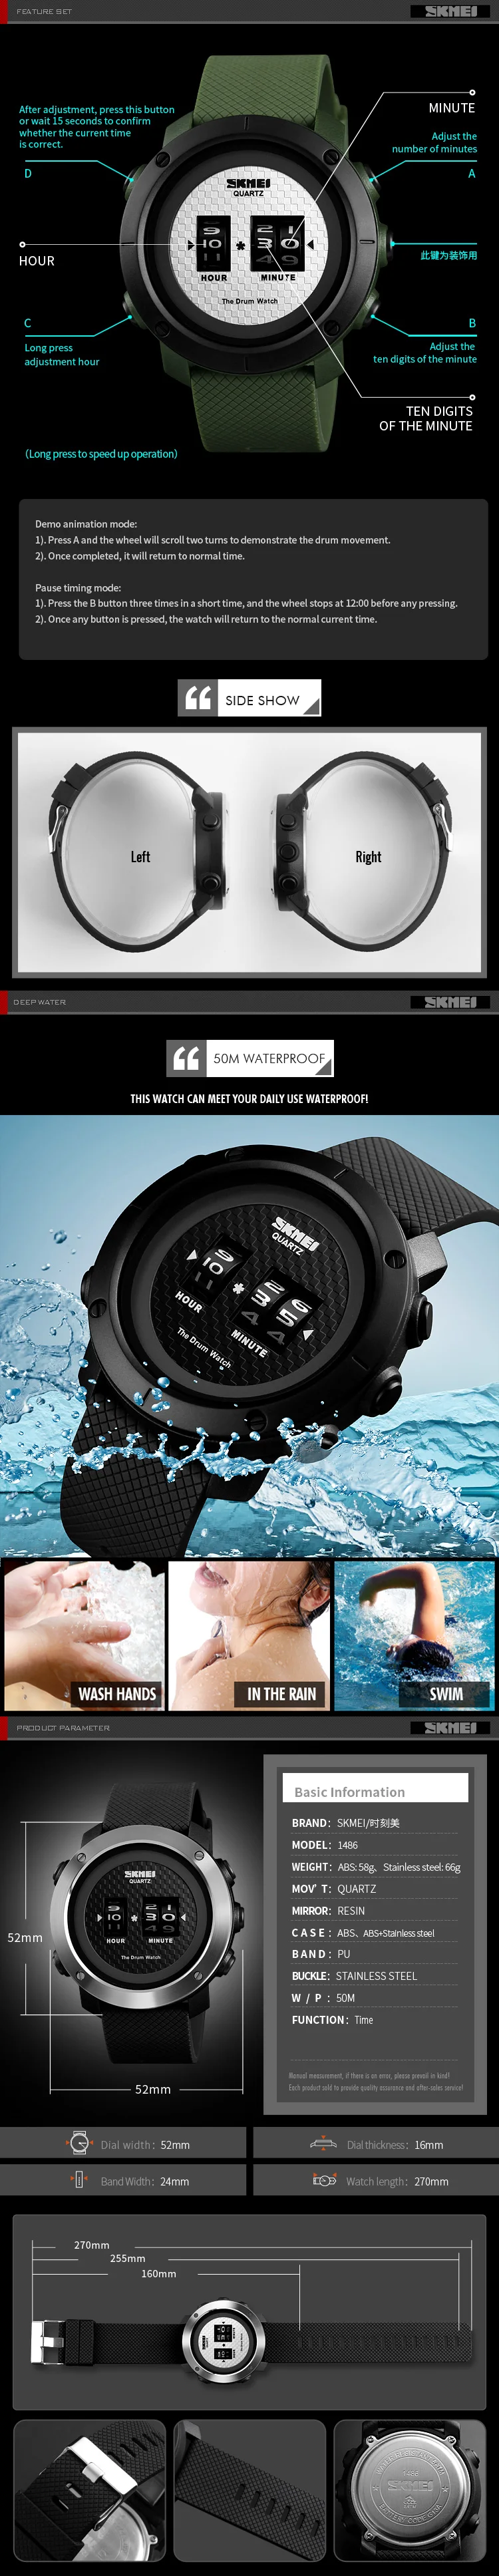 SKMEI мужские уличные спортивные новые часы цифровые наручные часы многофункциональные 50 м водонепроницаемые часы мужские наручные часы relogio masculino 1486